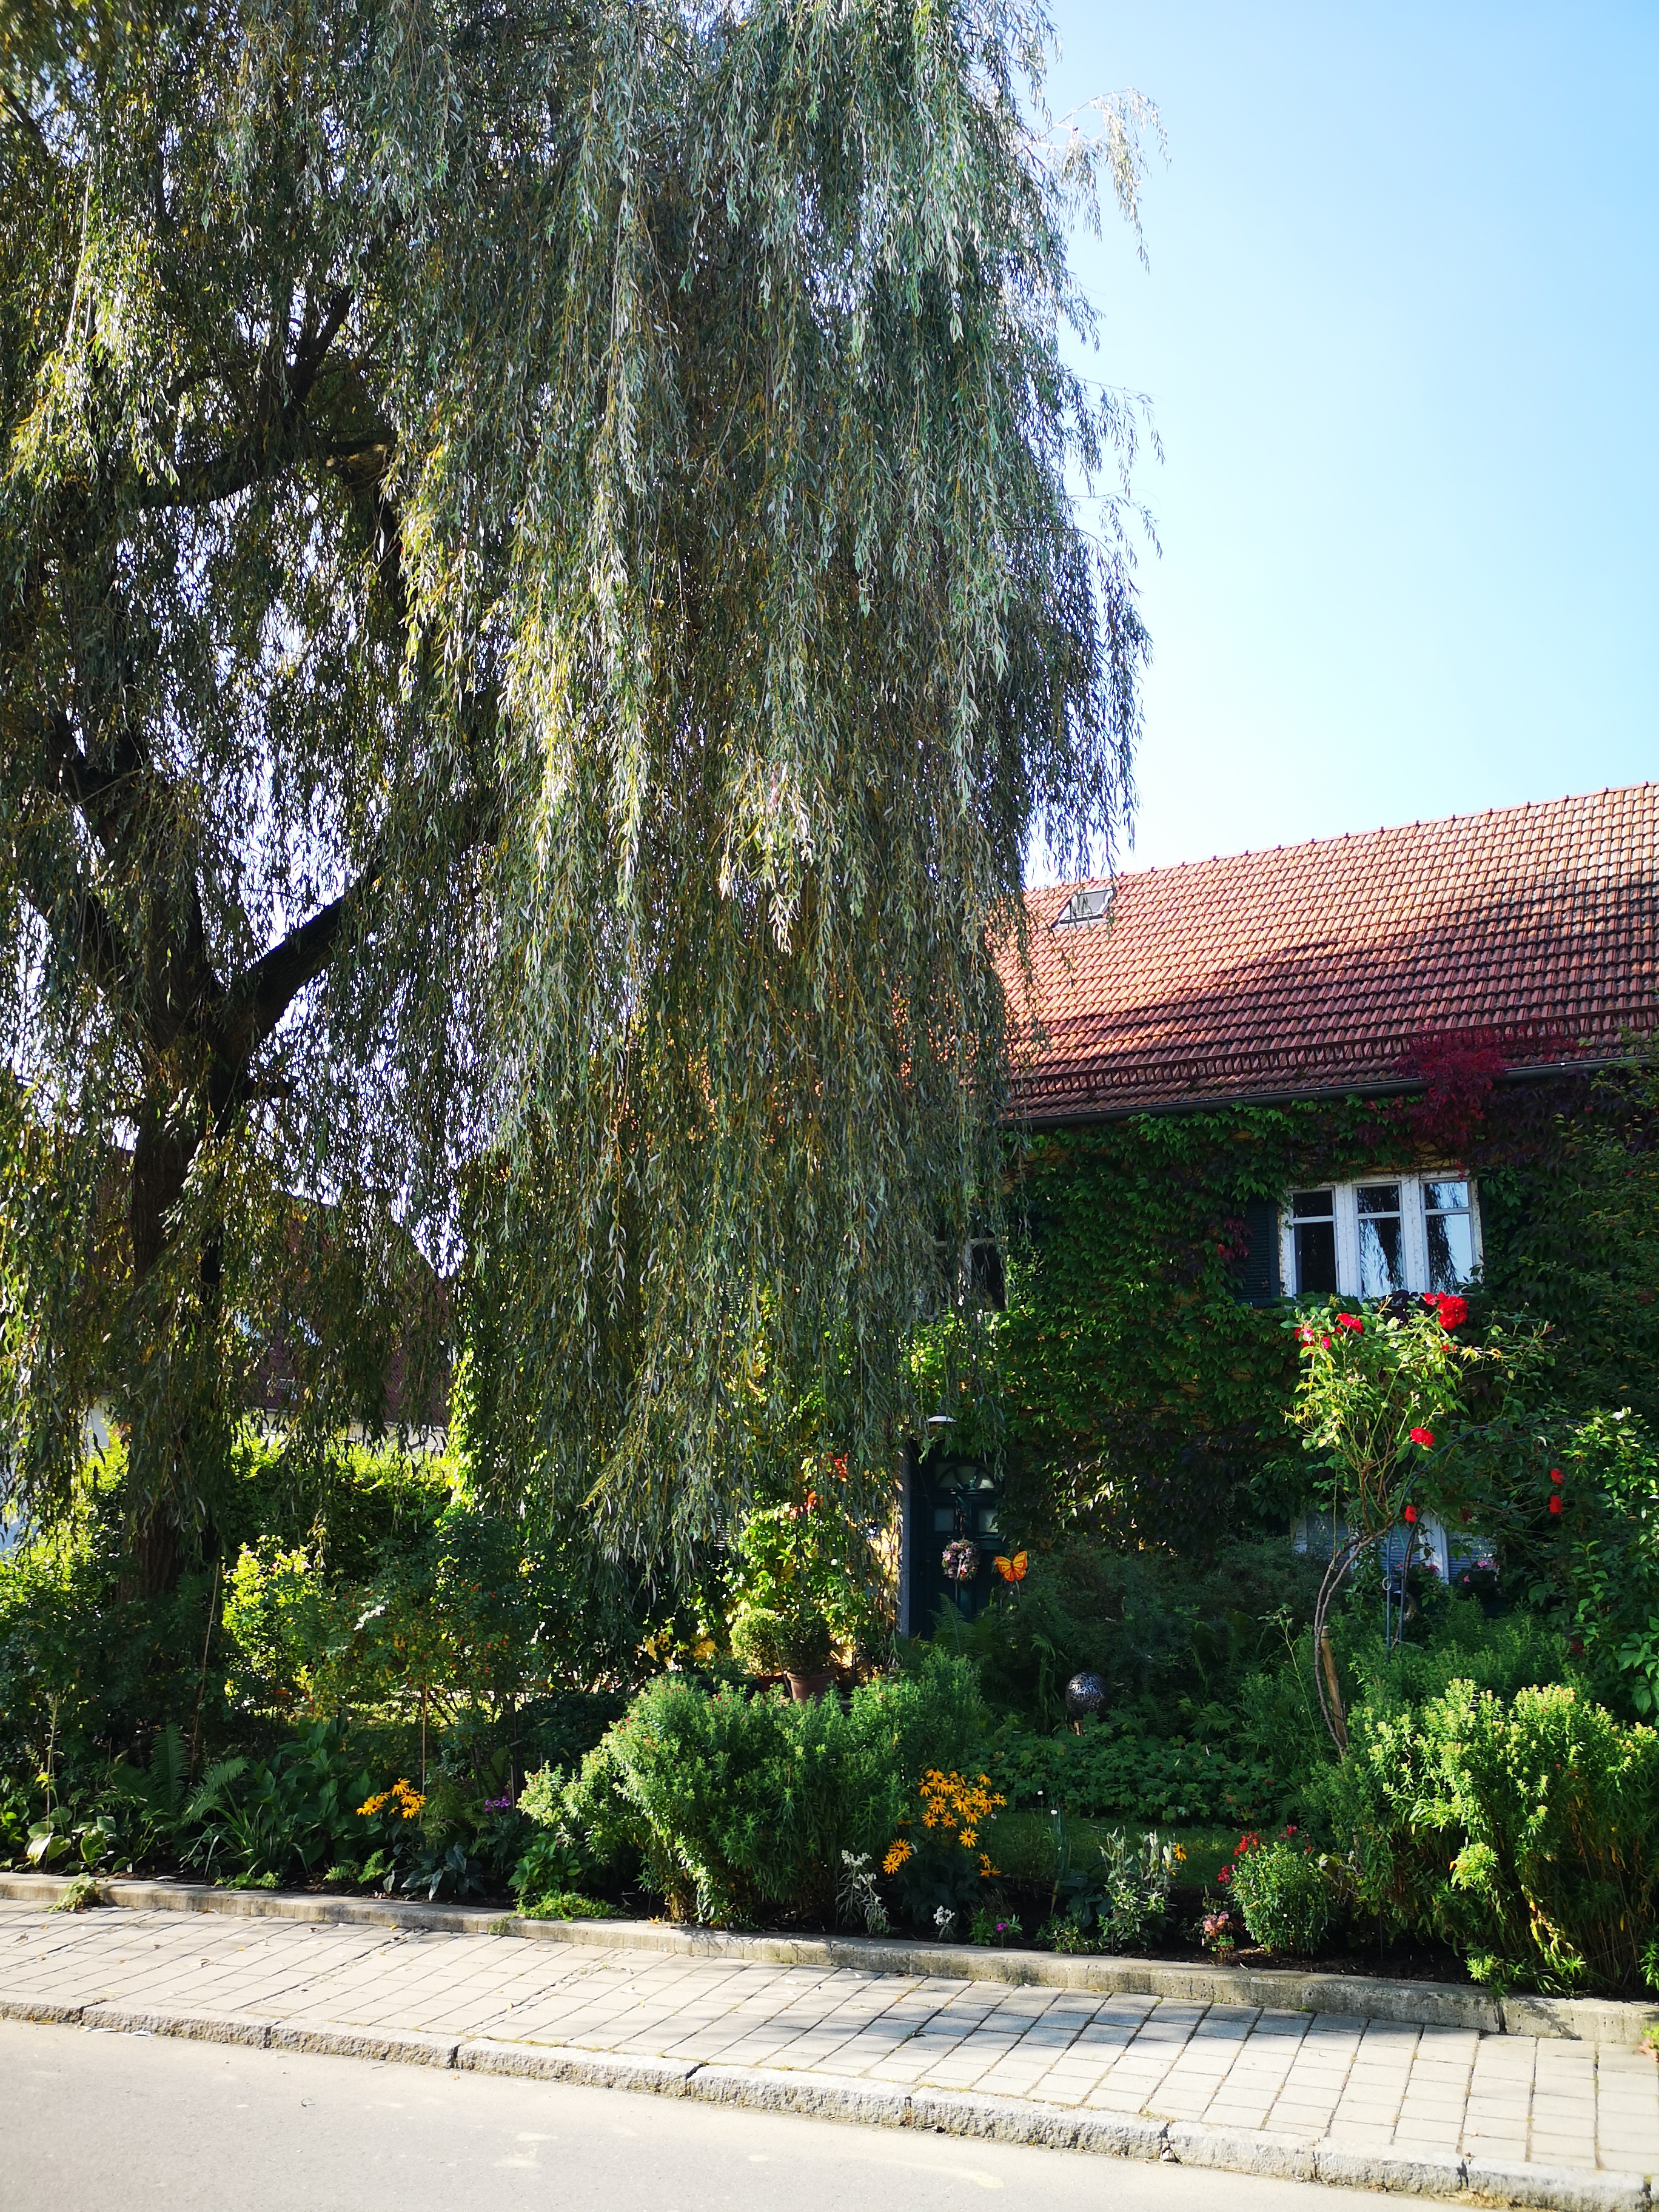 Vortrag „Klimagarten – Eine grüne Oase trotz Trockenheit“ am 27.2. im Gemeinschaftshaus Unterumbach